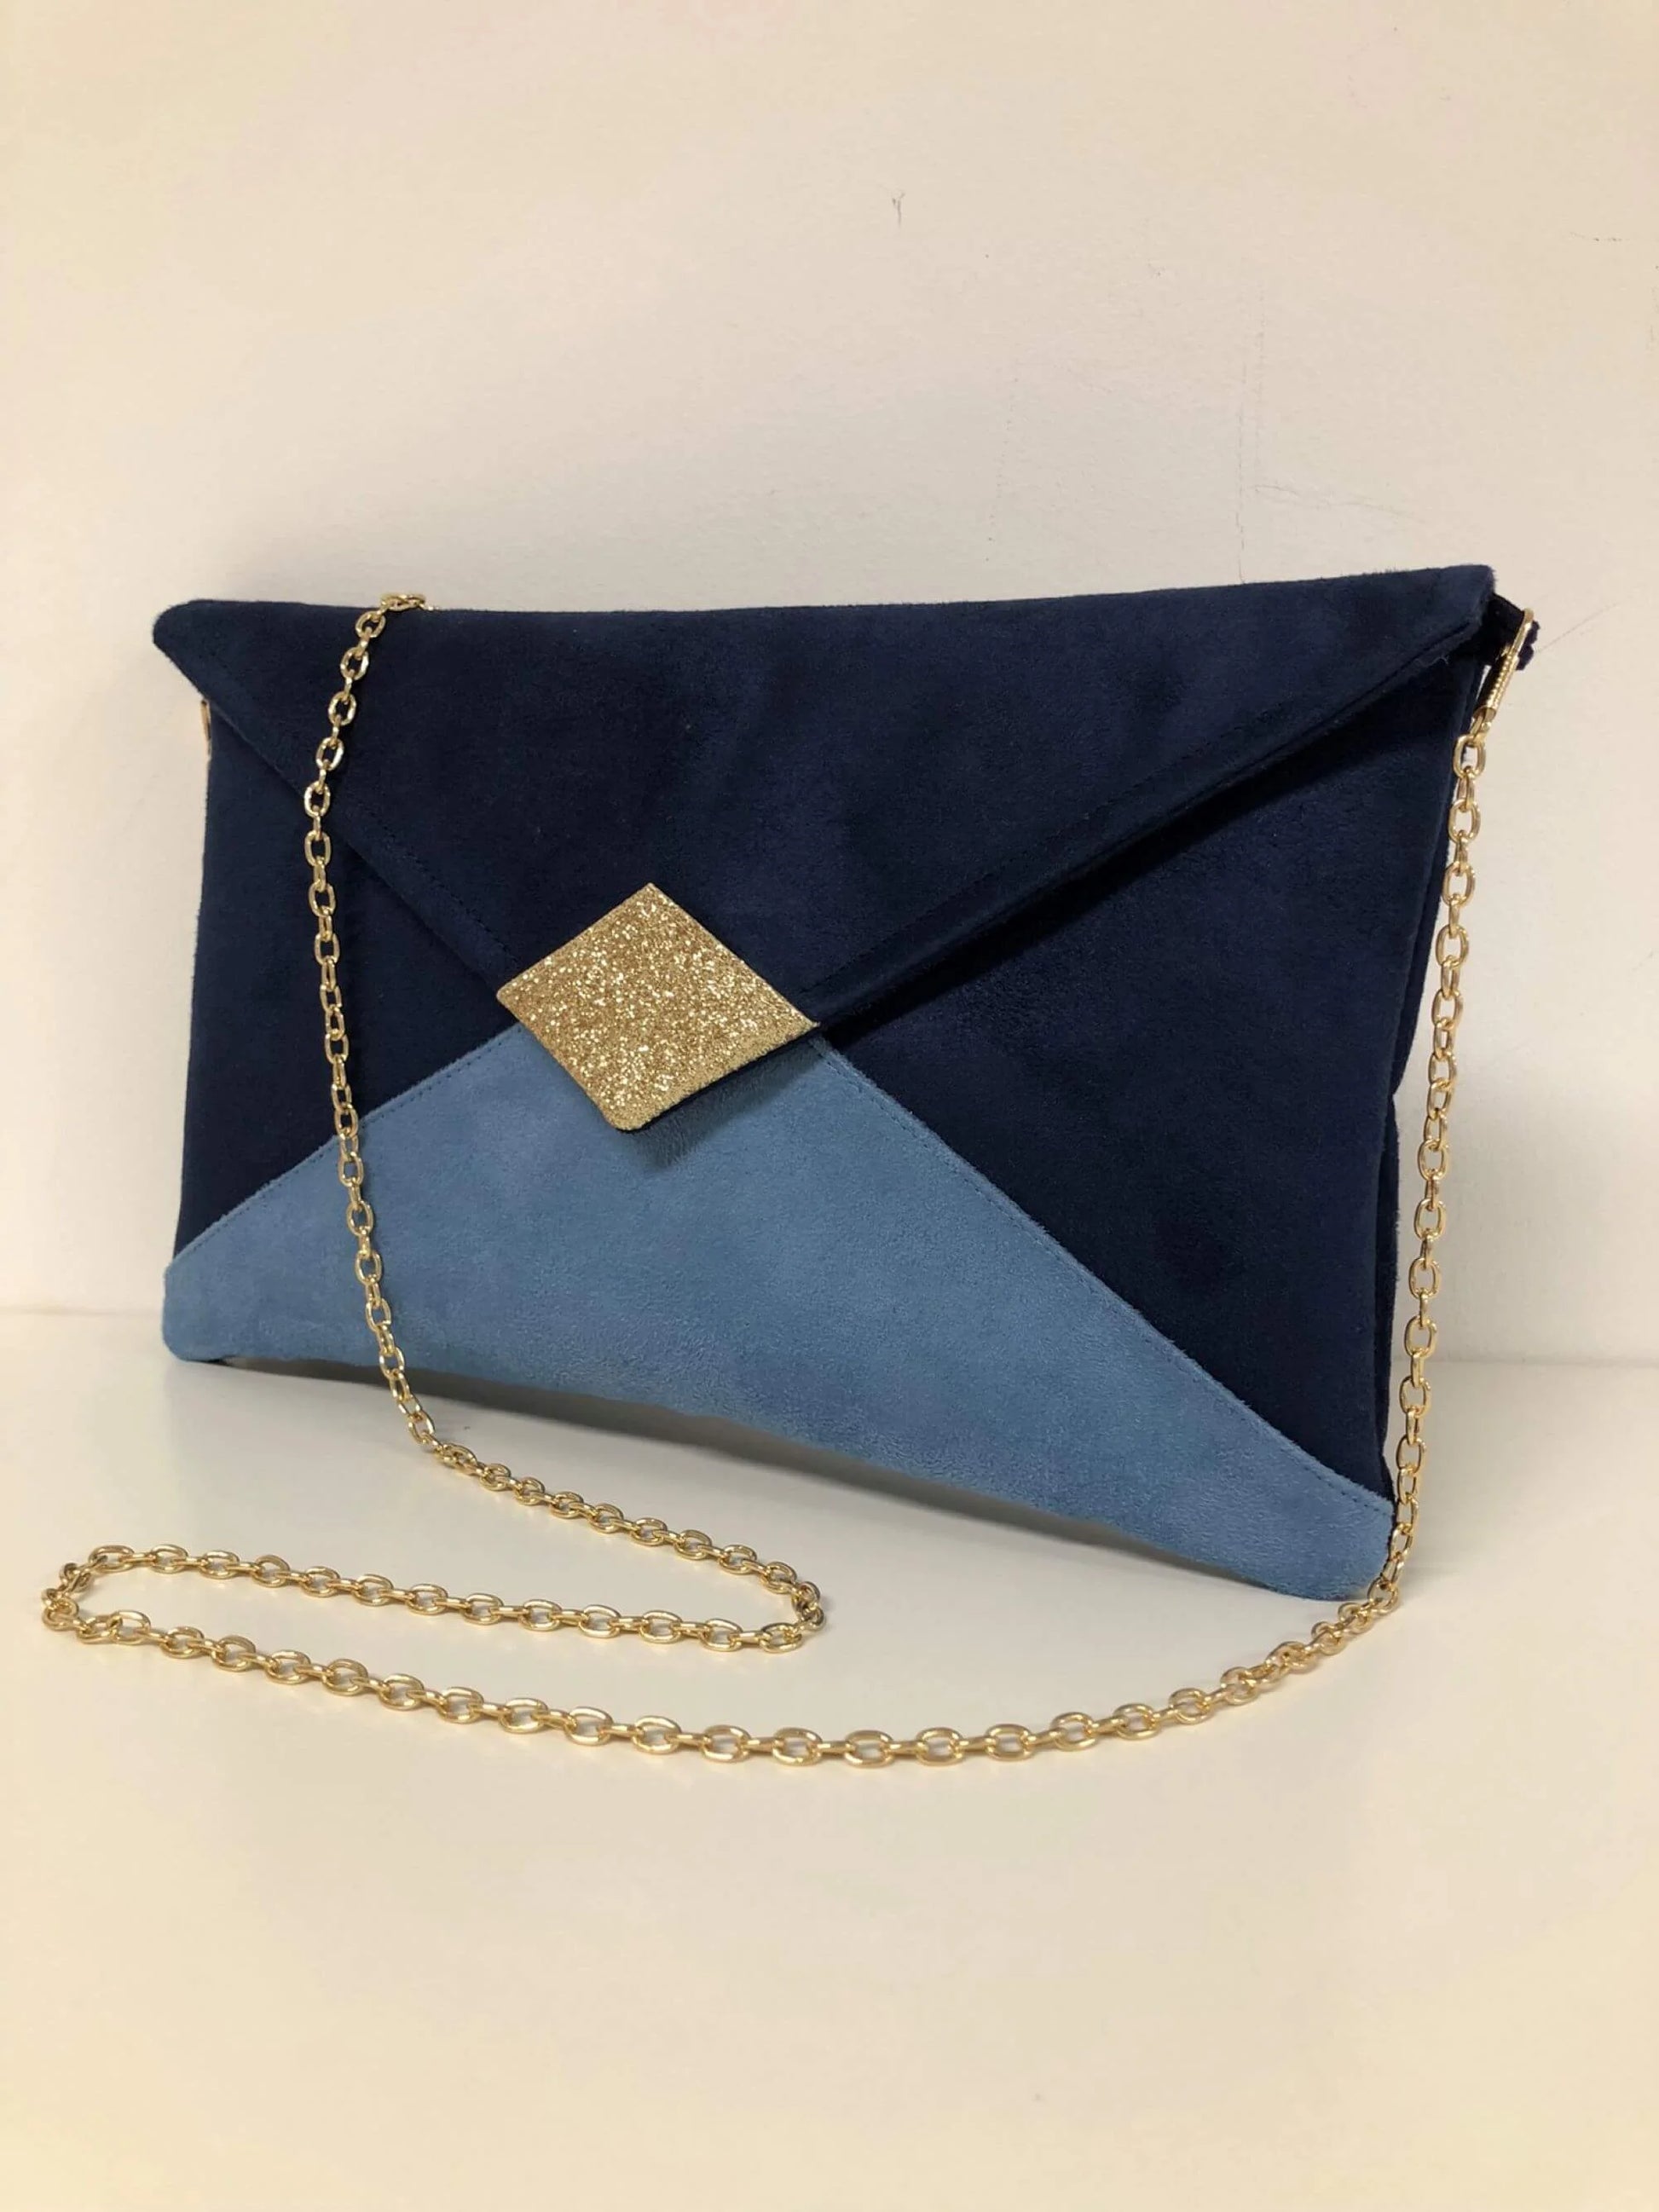 Le sac pochette Isa bleu marine,  bleu ciel et doré, face avant.